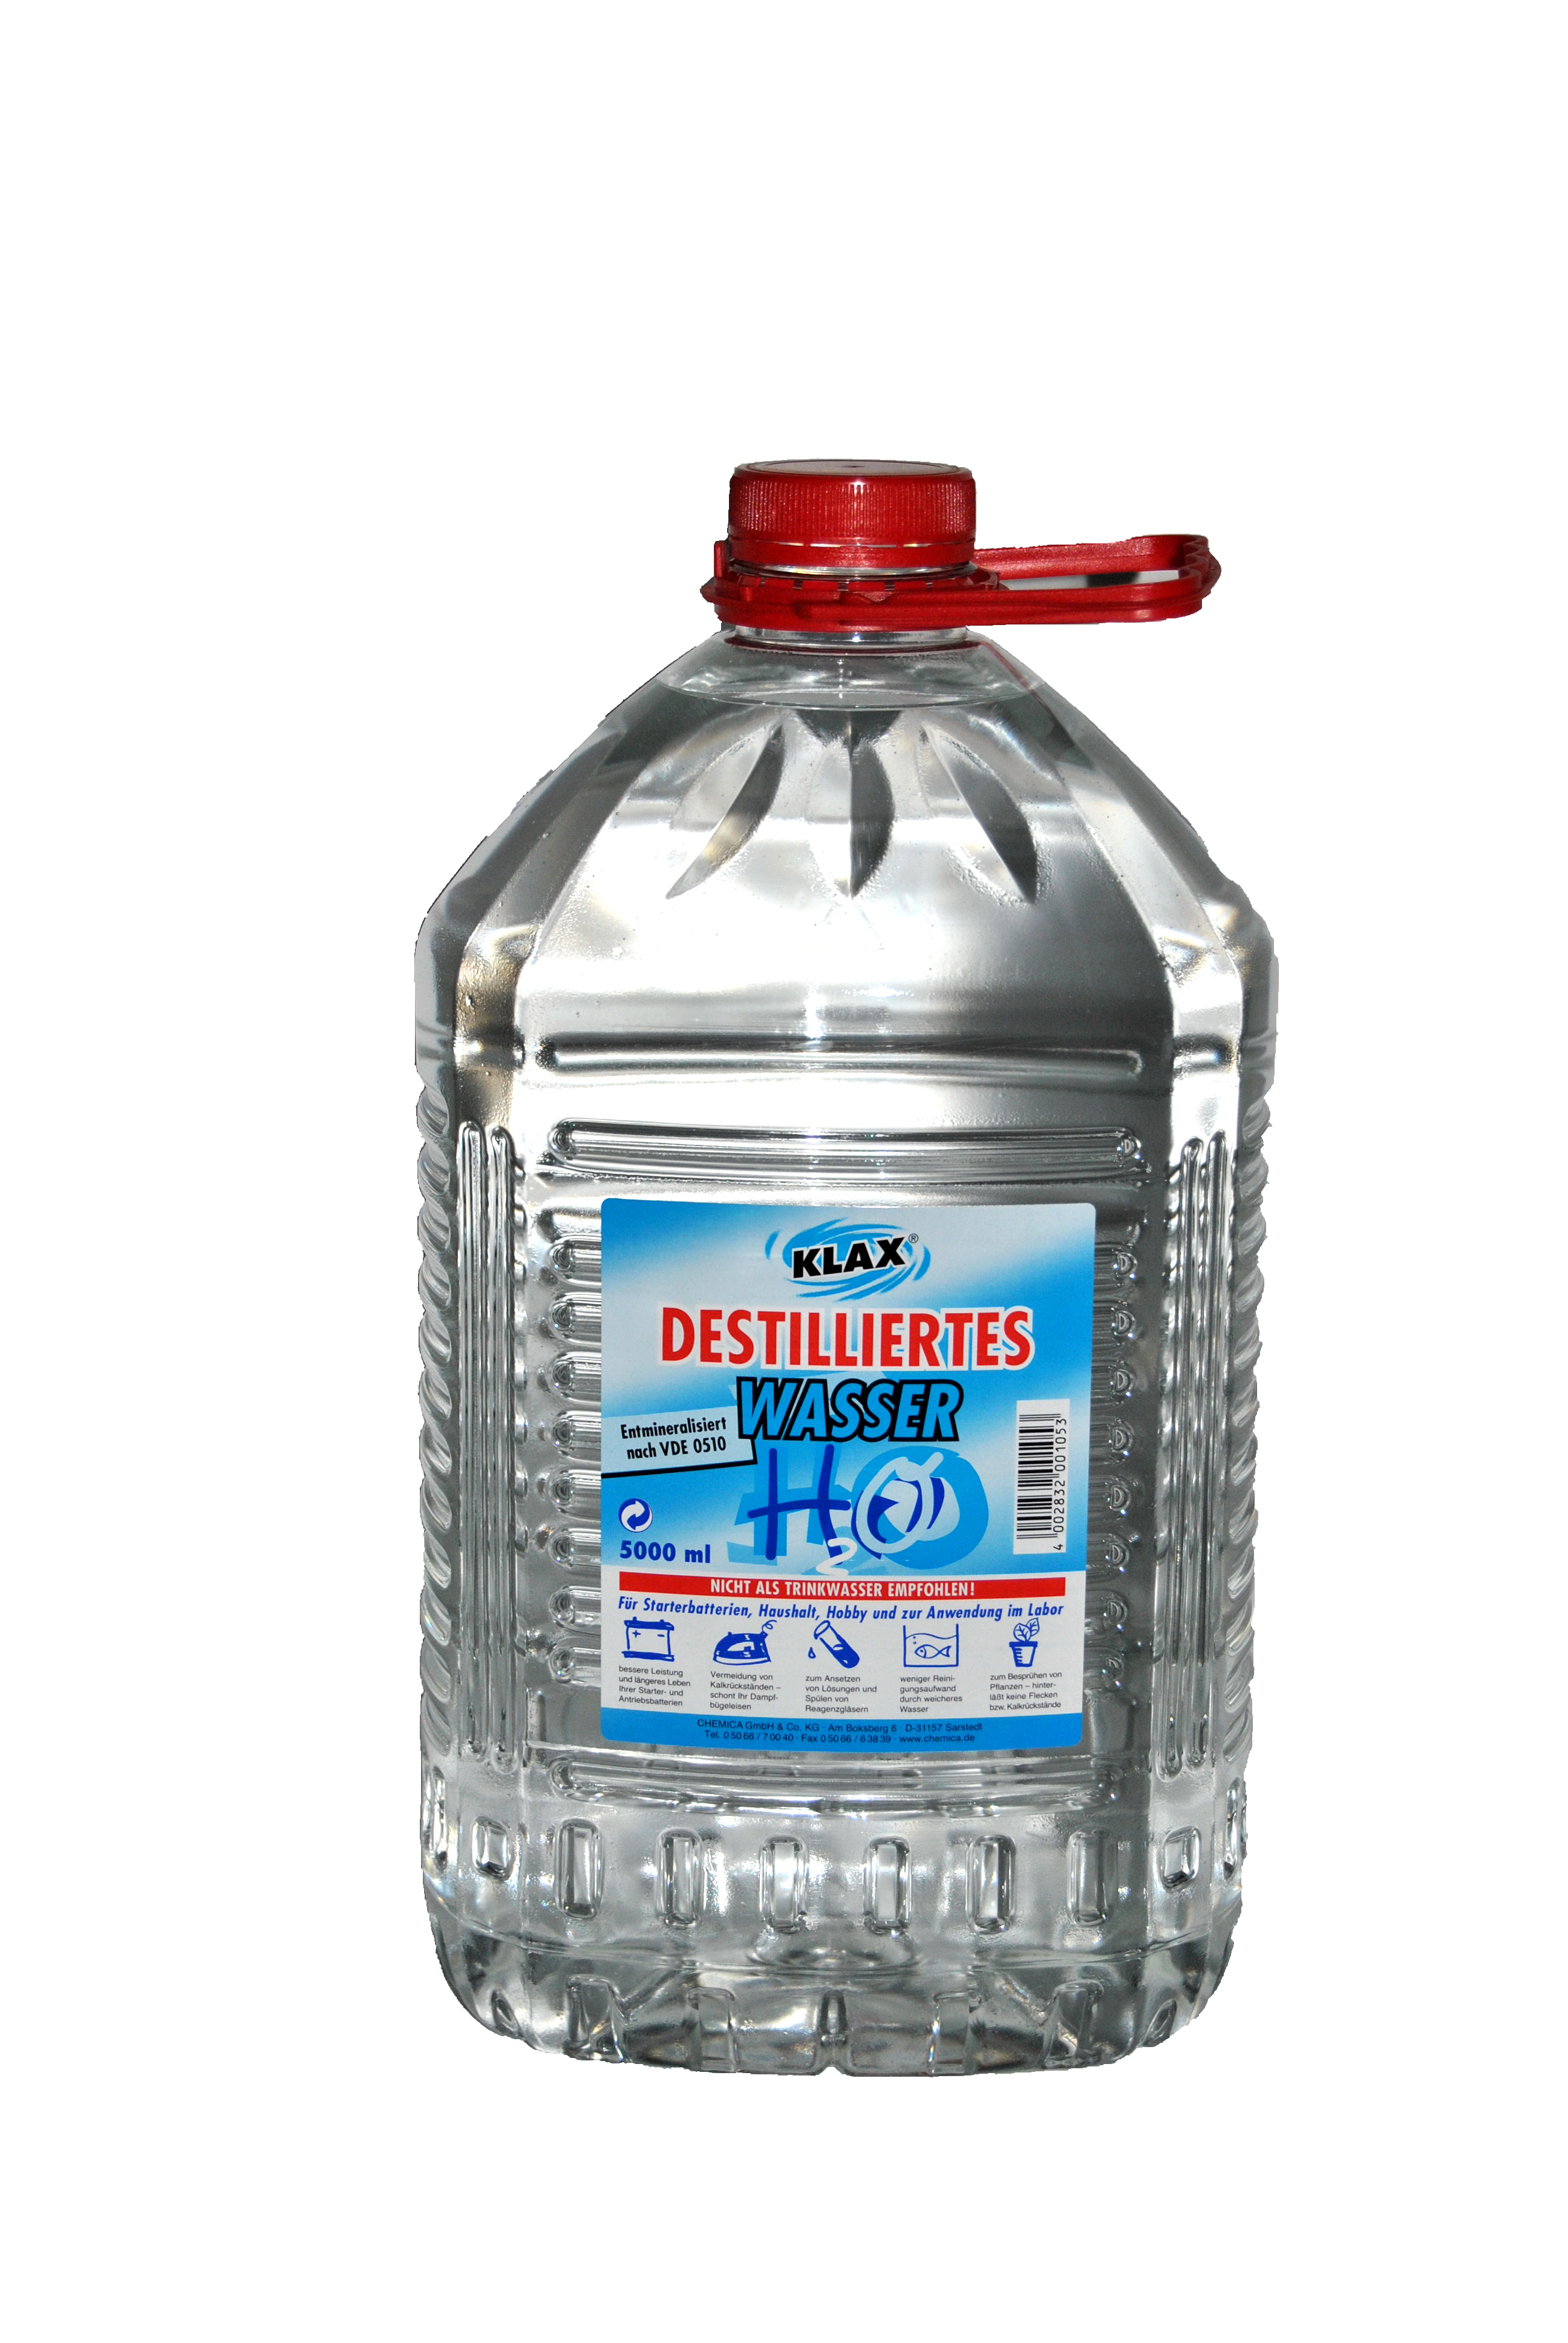 winkler Shop - Destilliertes Wasser, 5l